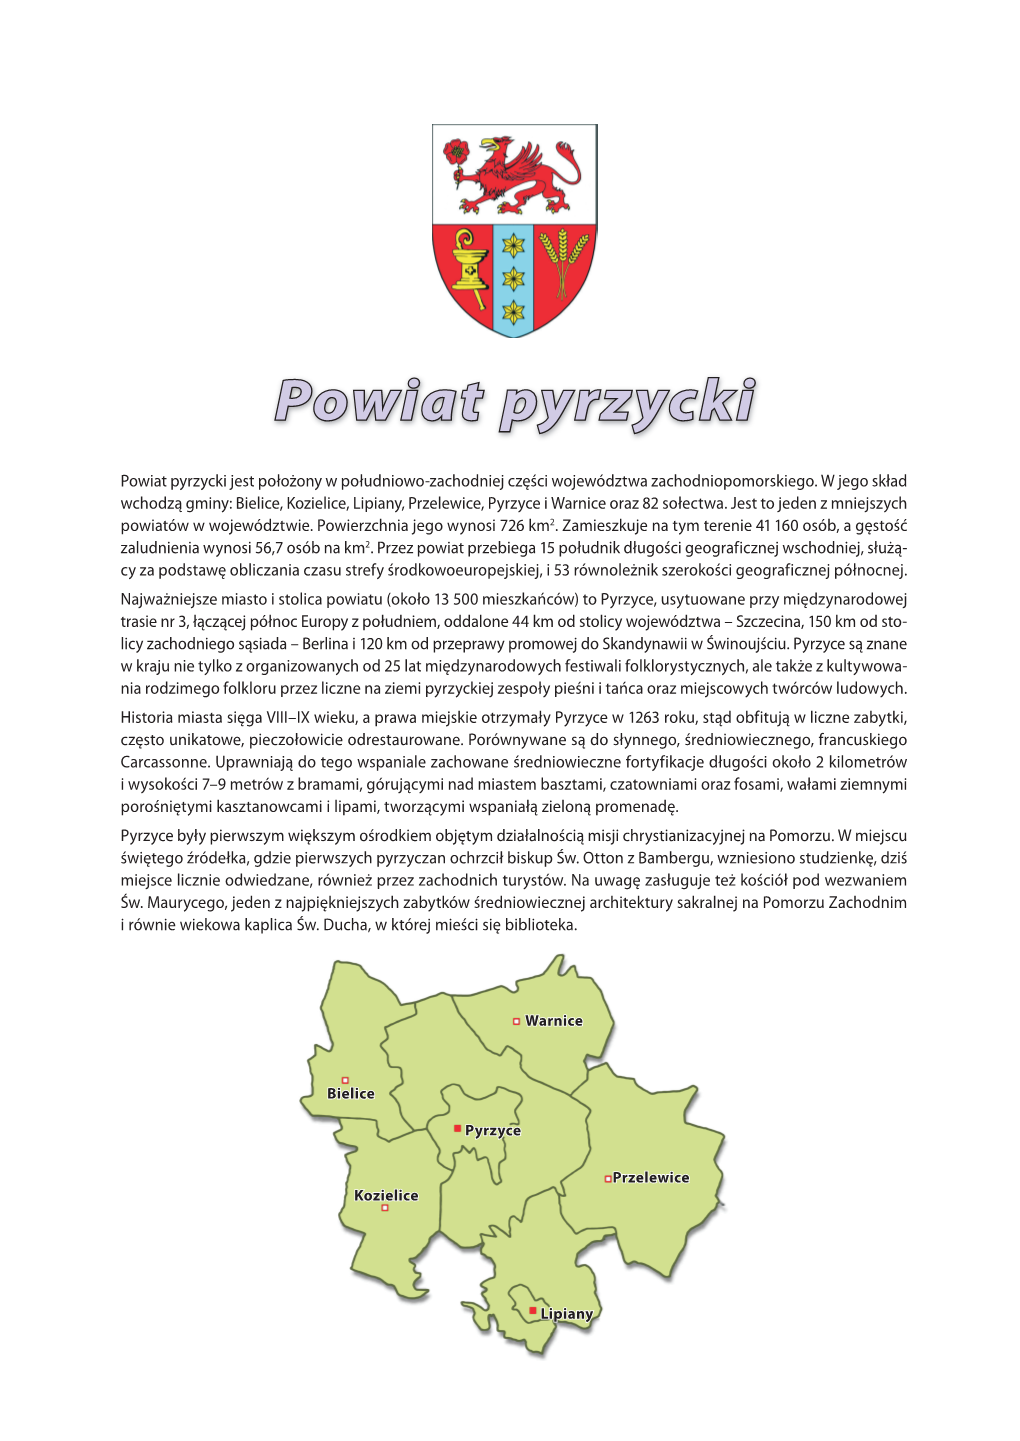 Powiat Pyrzycki